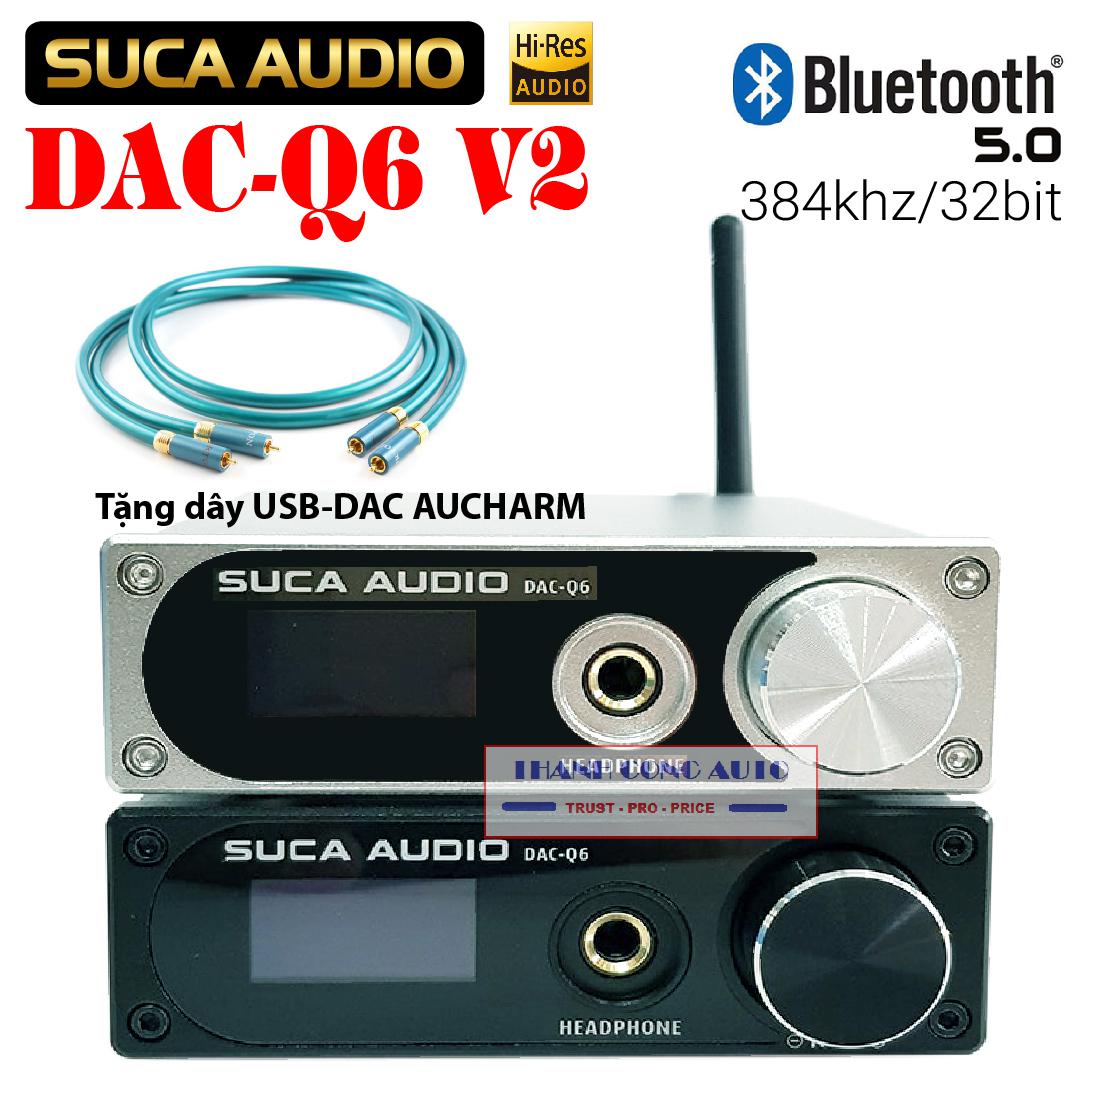 SUCA DAC Q6 V2 & Q6 PRO giải mã 32BIT DSD256 Bluetooth 5.0 ++ Tặng ngay 500K.